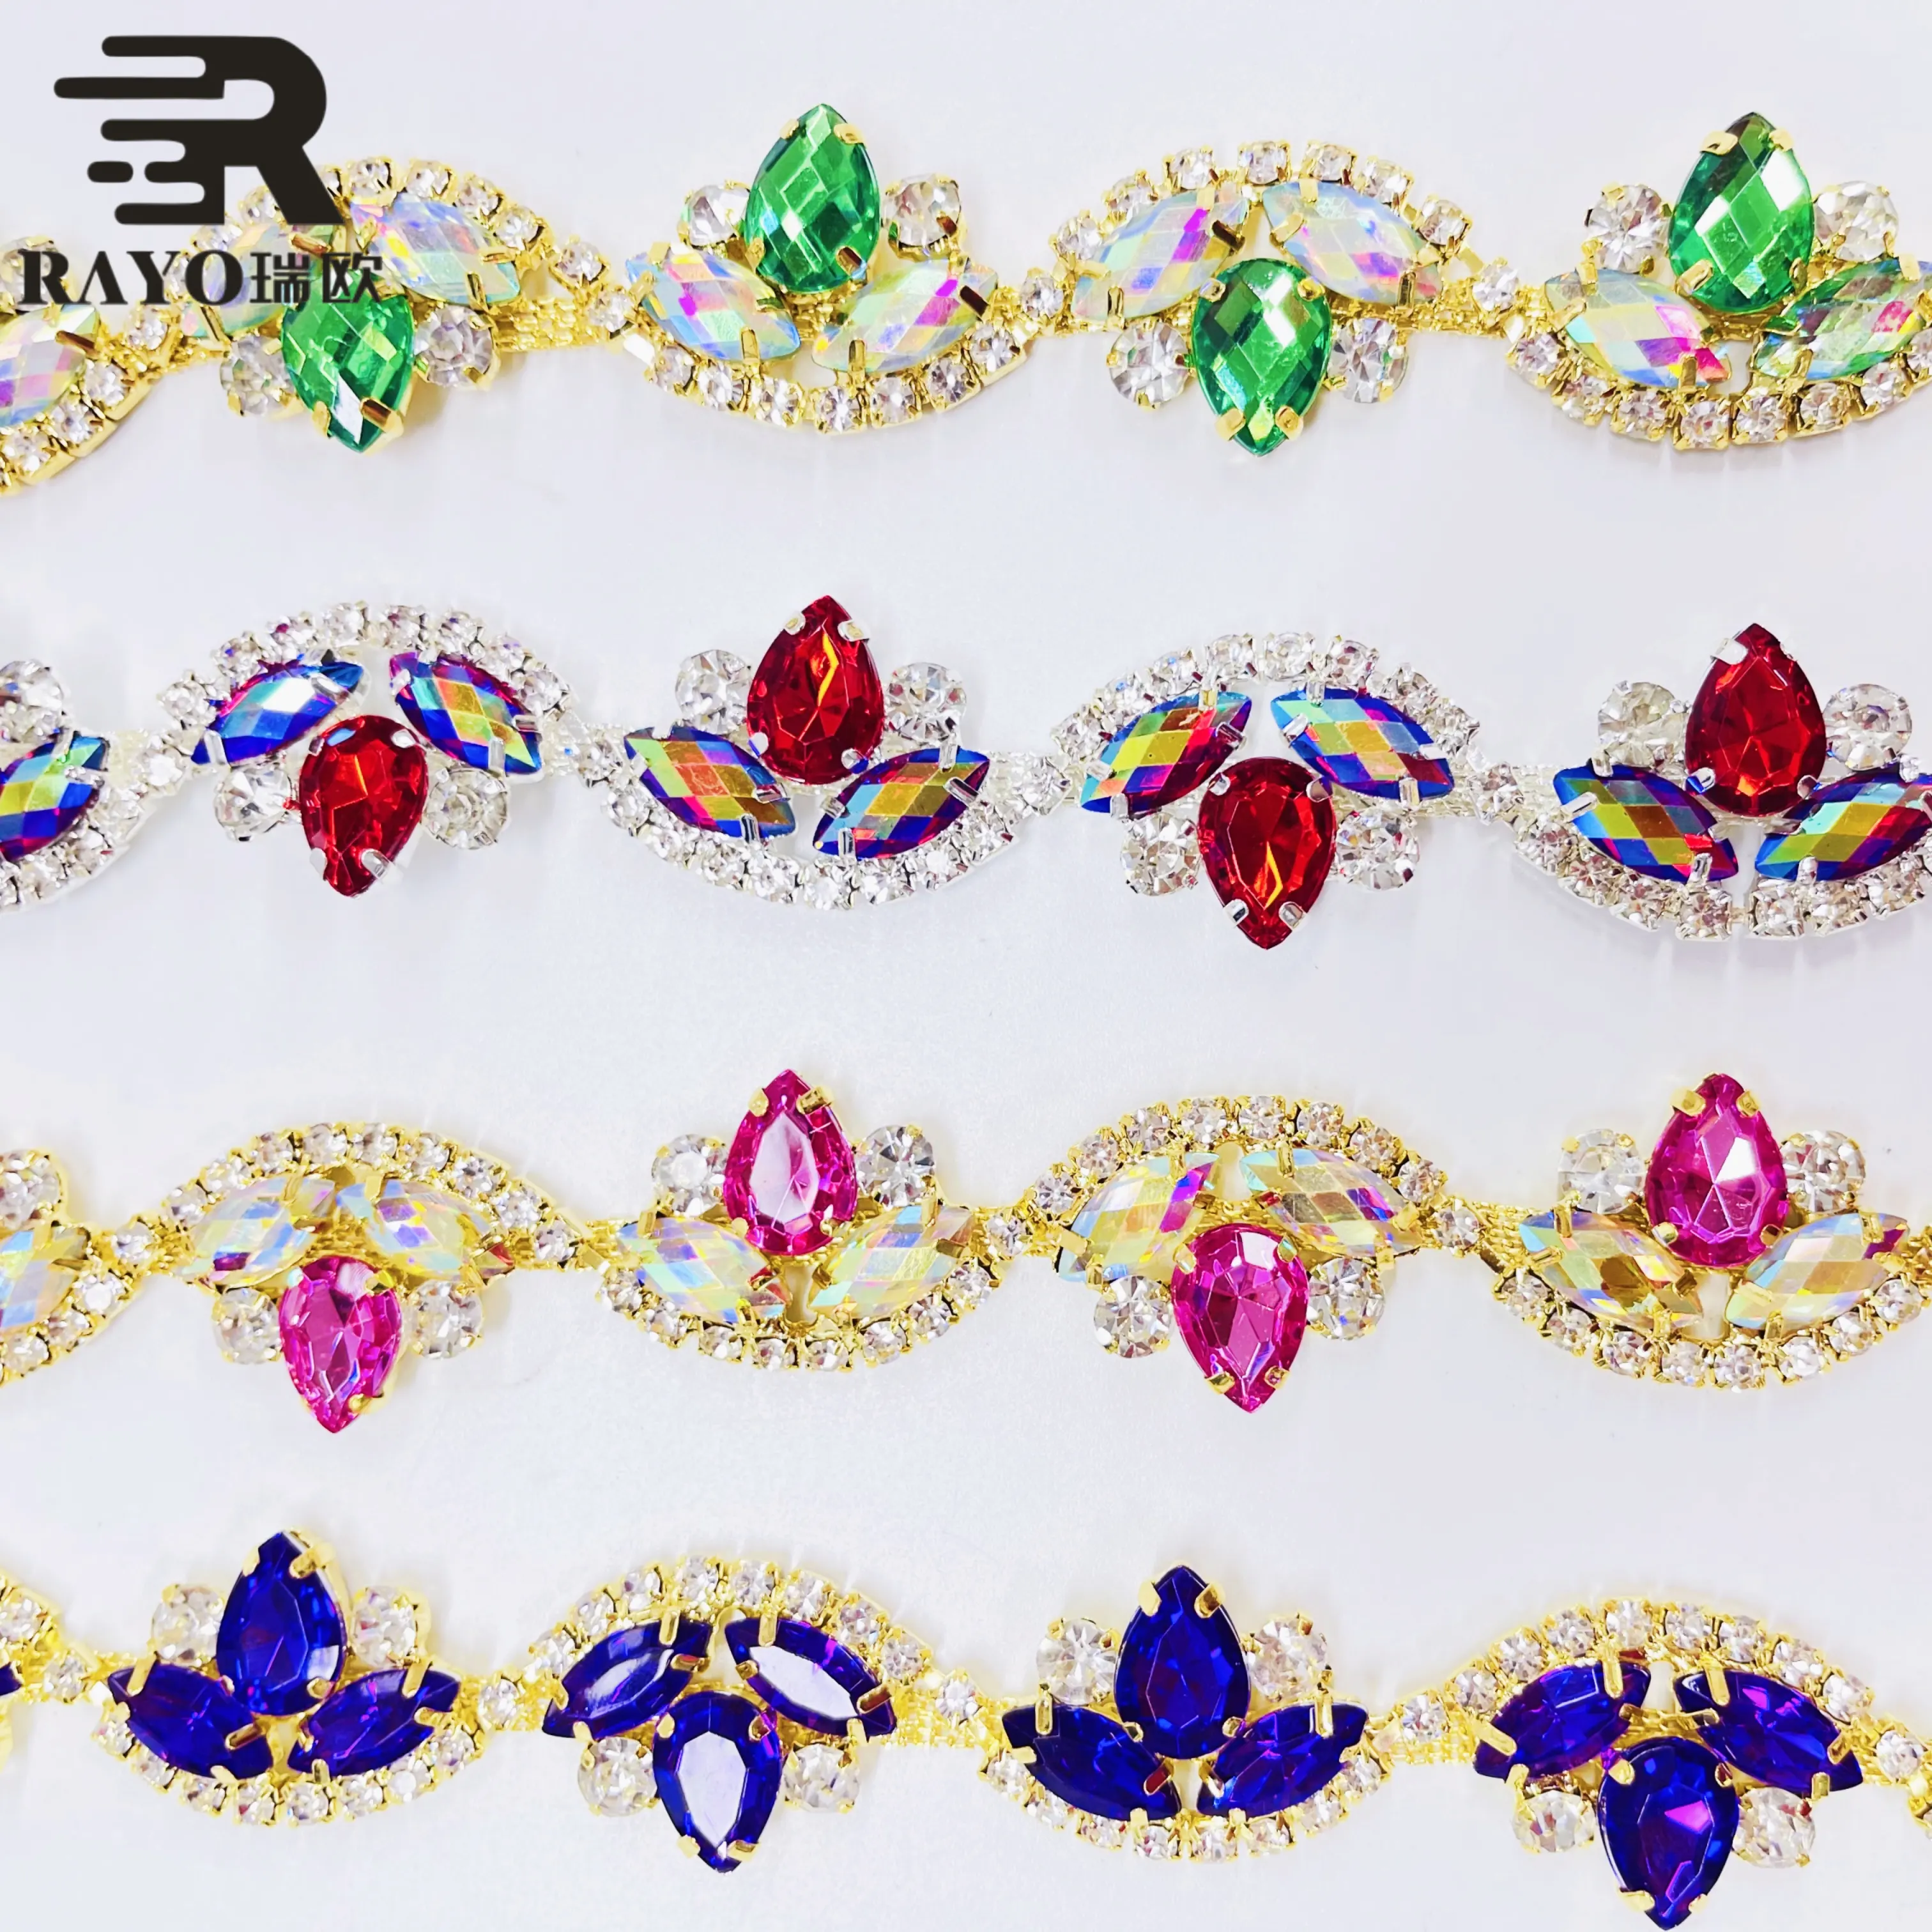 Strass de qualité supérieure avec plus de 100 belles couleurs en stock pour la fabrication de bijoux et les colliers de mode